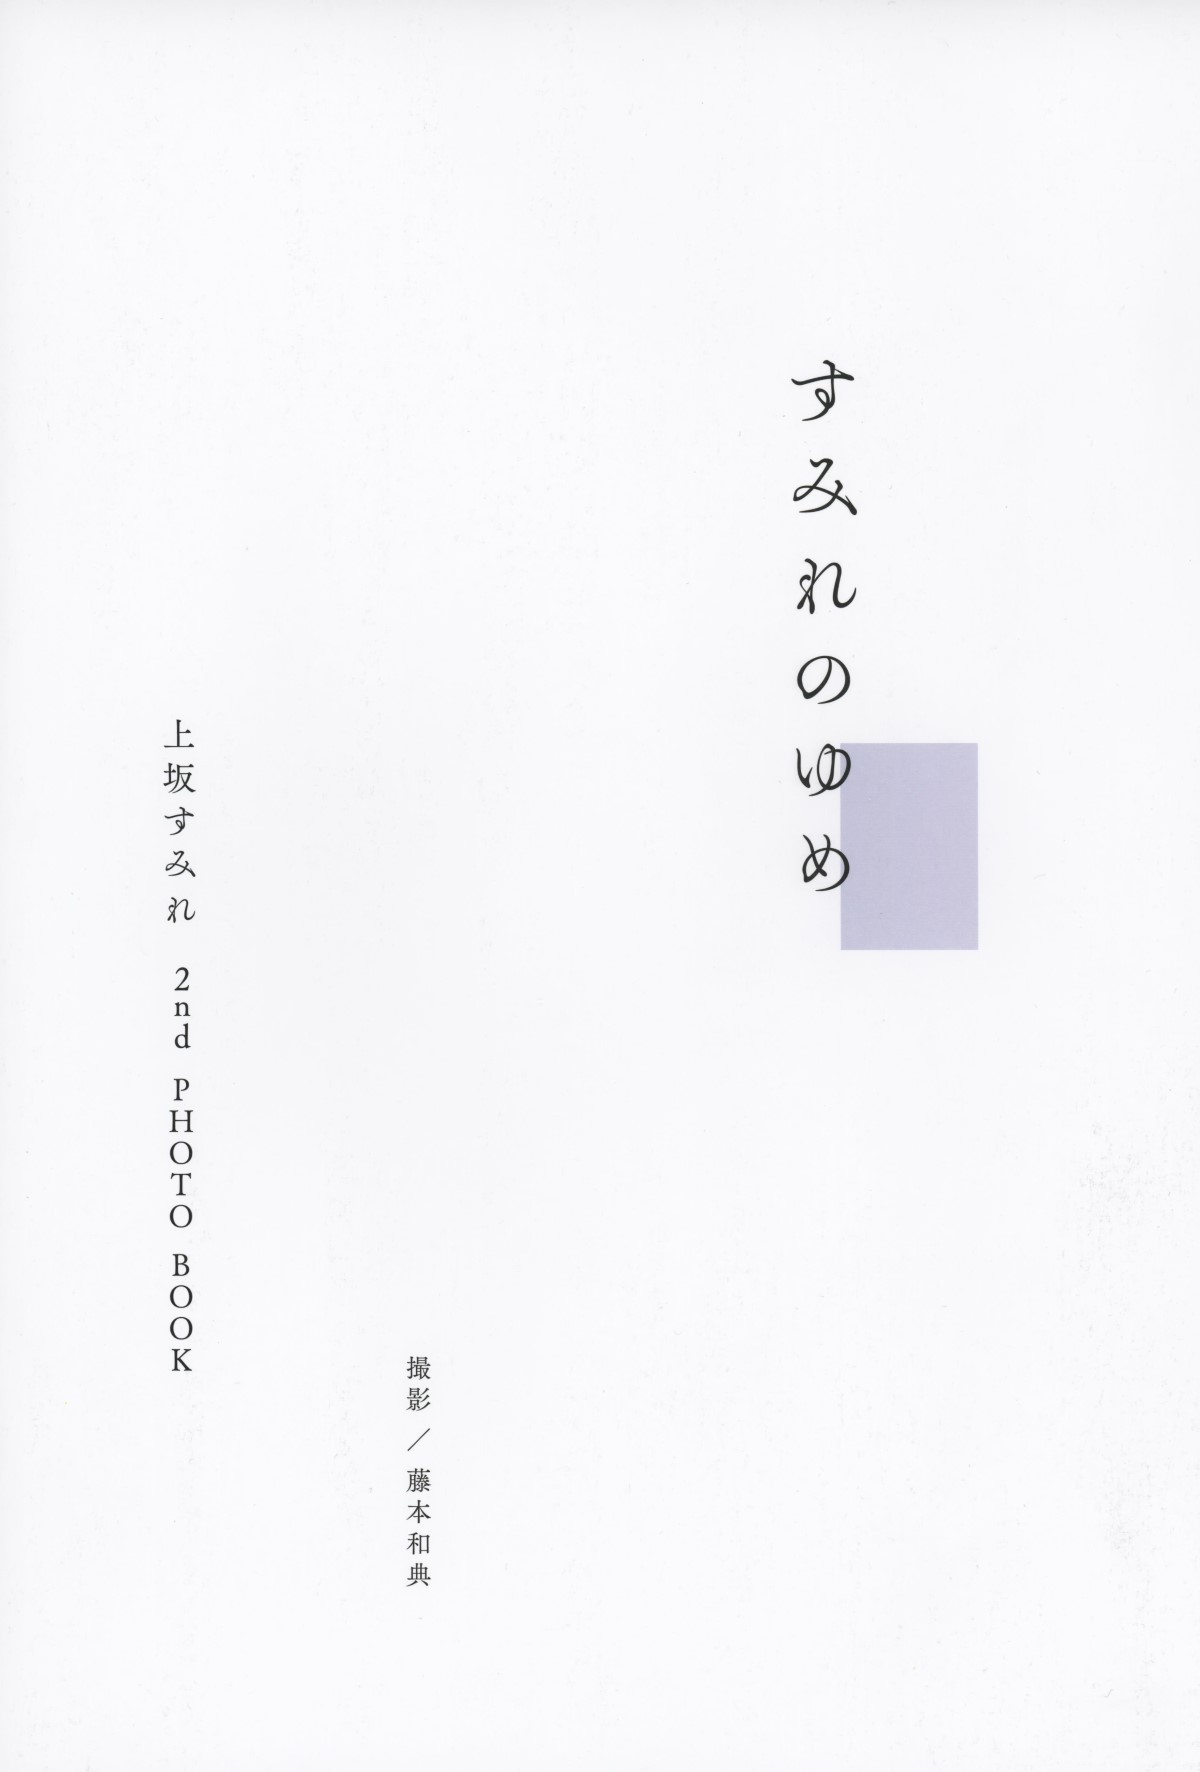 Photobook 2022 11 11 Sumire Uesaka 上坂すみれ Violet Dream 0002 8947721035.jpg